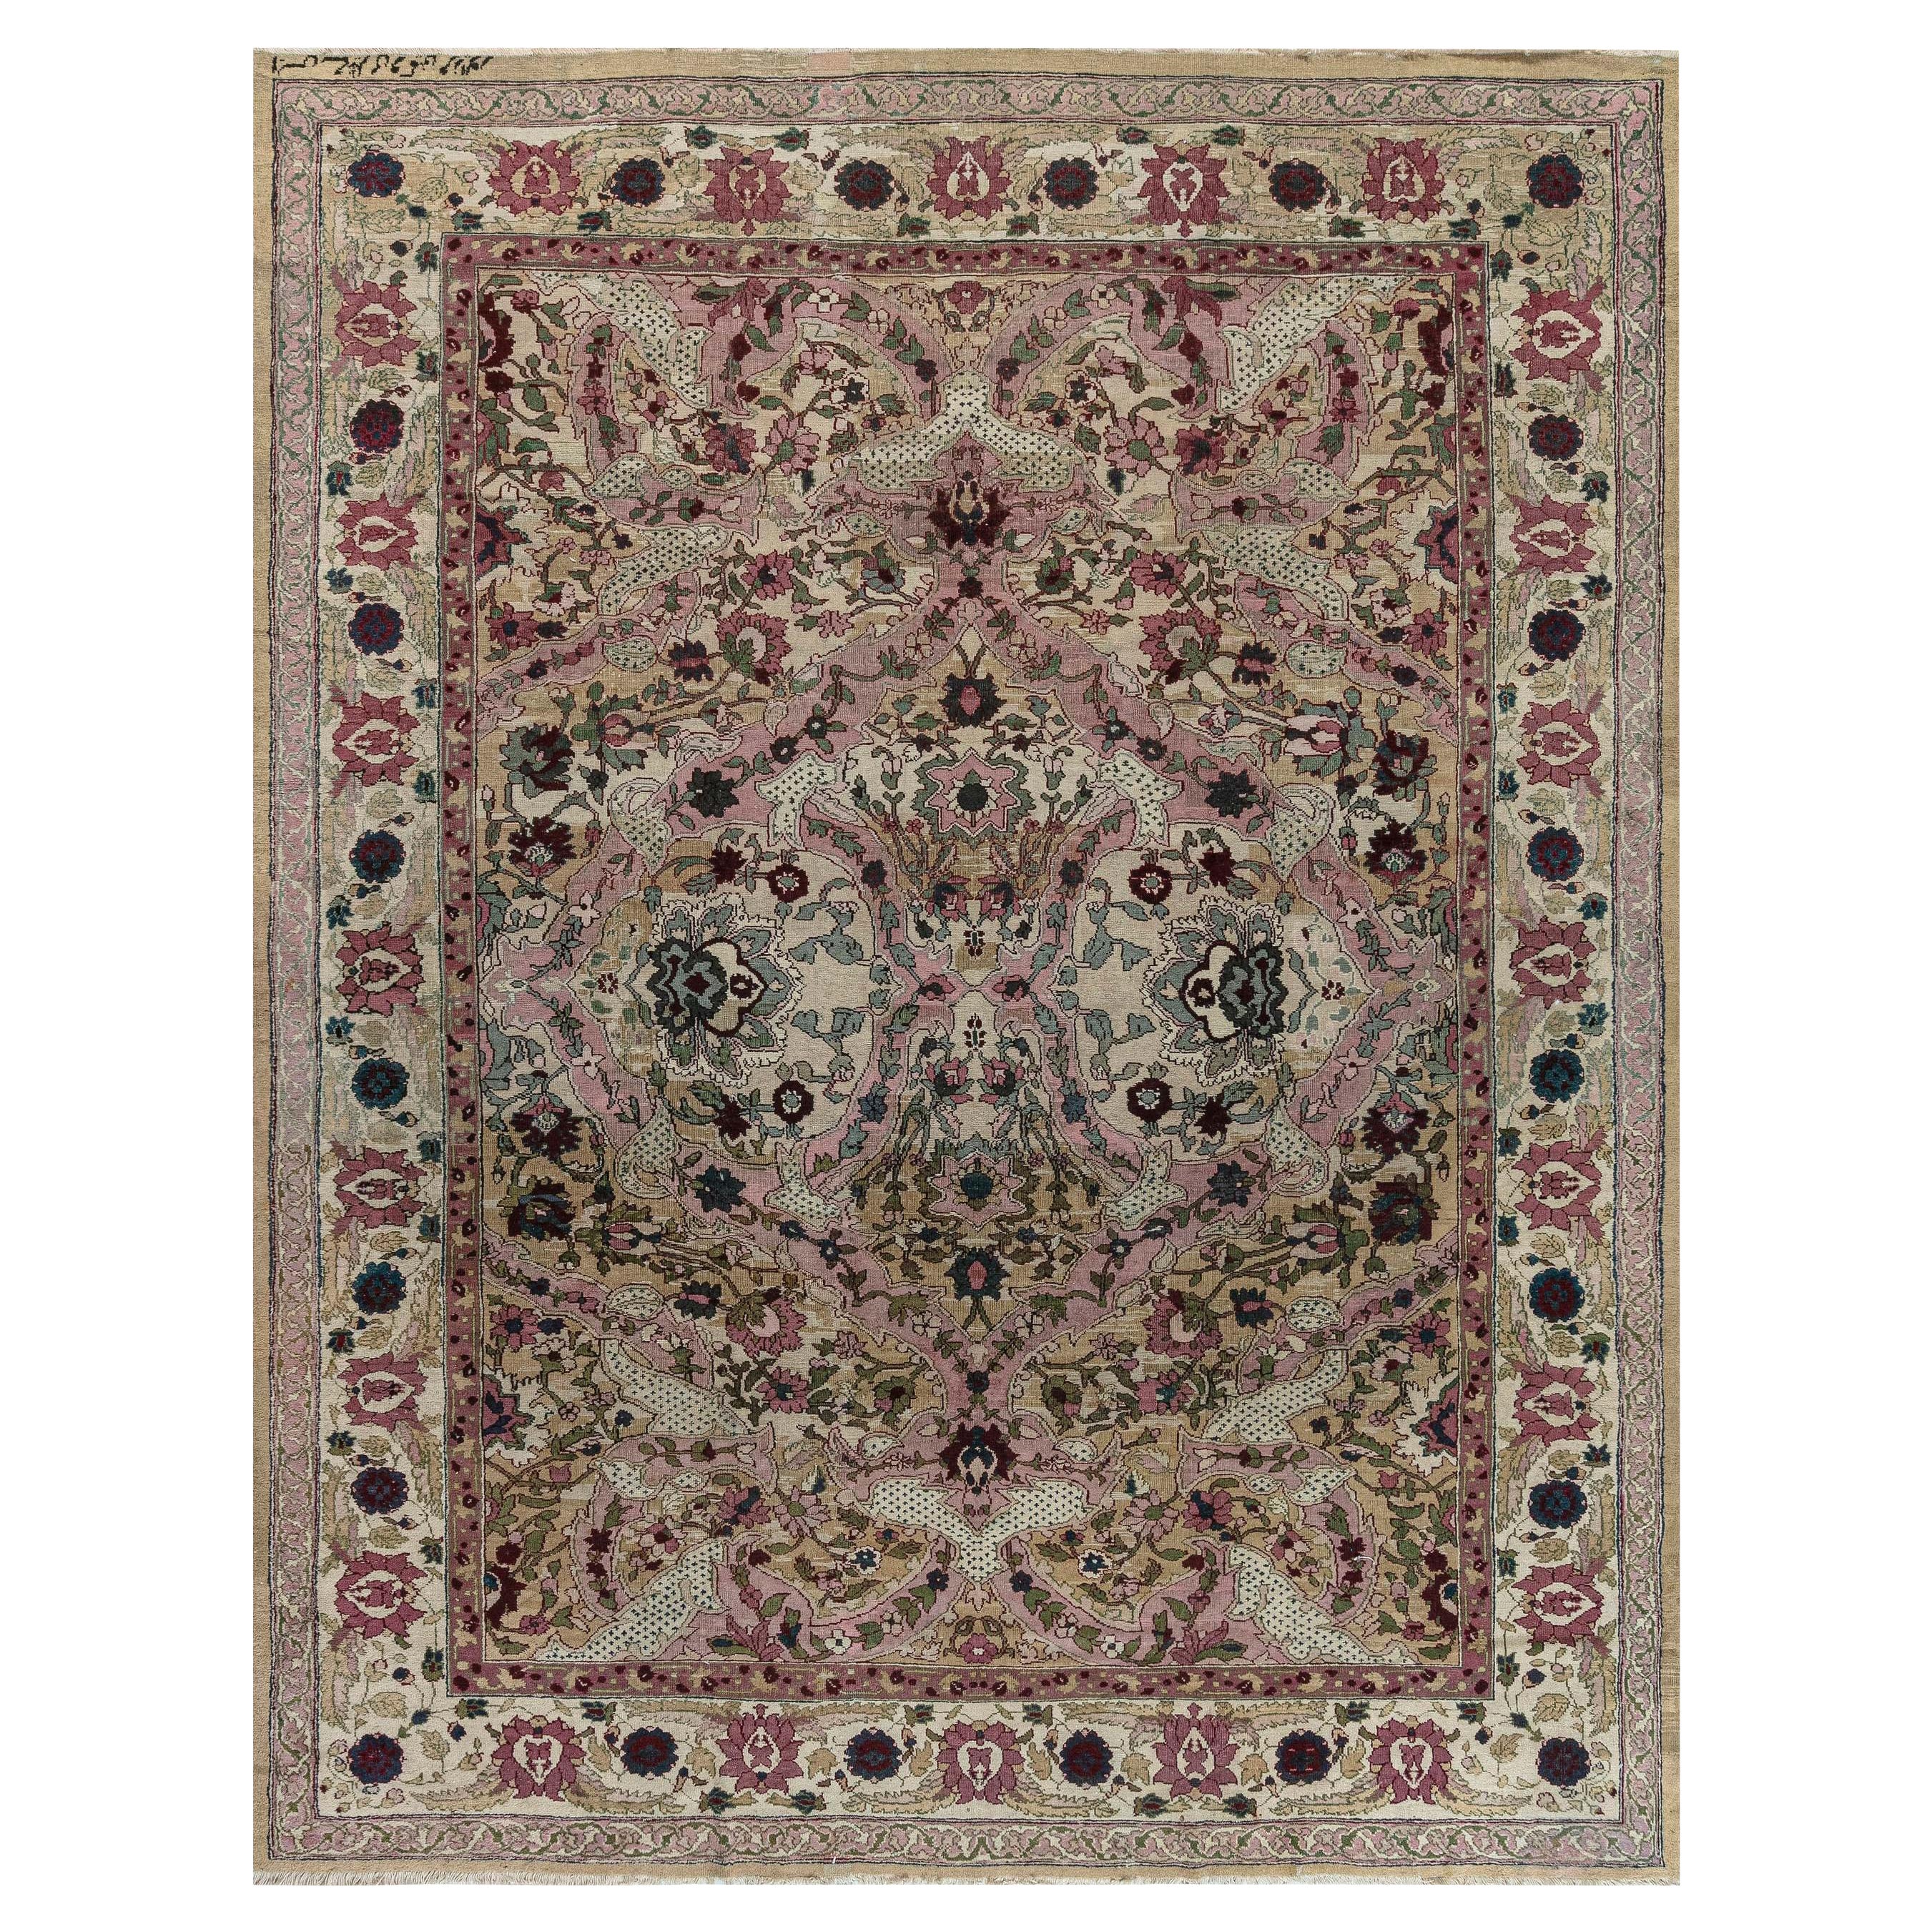 Authentique tapis indien Amritsar Botanic du 19ème siècle